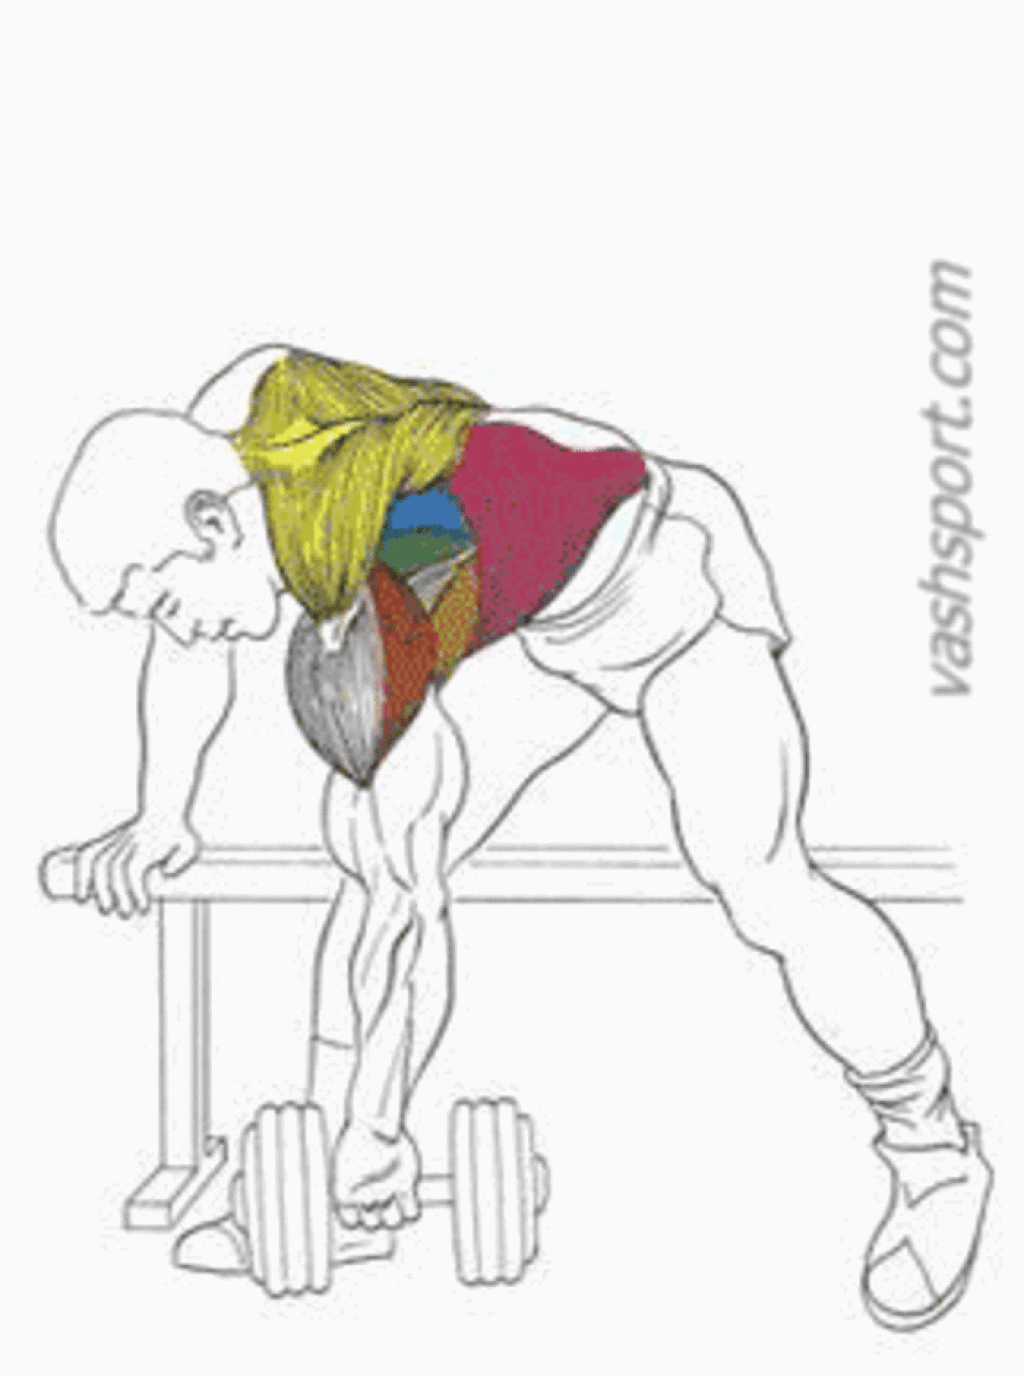 Как накачать крылья (широчайшие мышцы спины). упражнения дома и в тренажерном зале